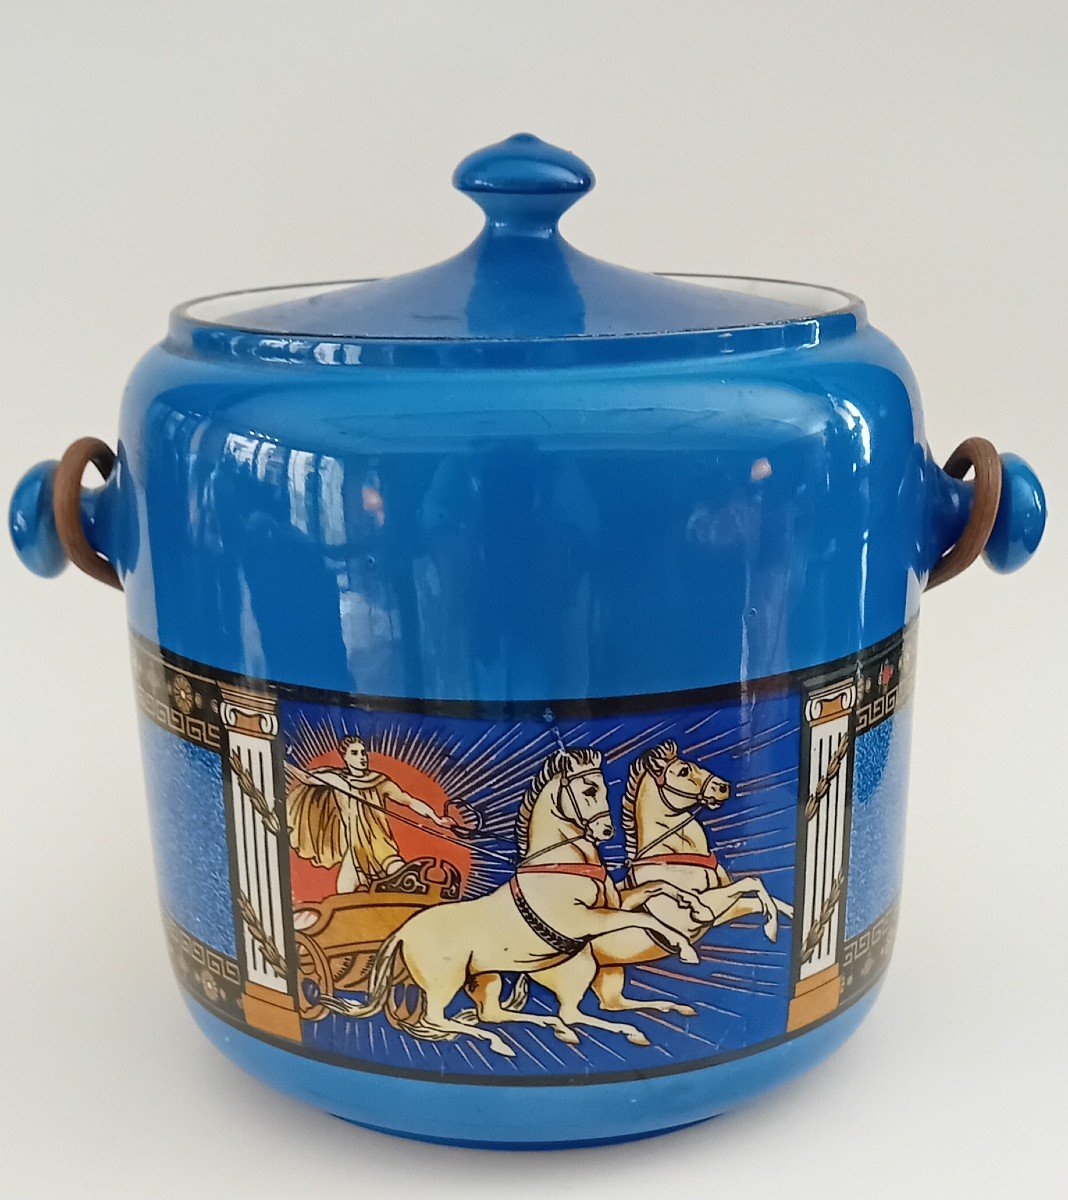 Cesto in ceramica a fondo blu con scene mitologica